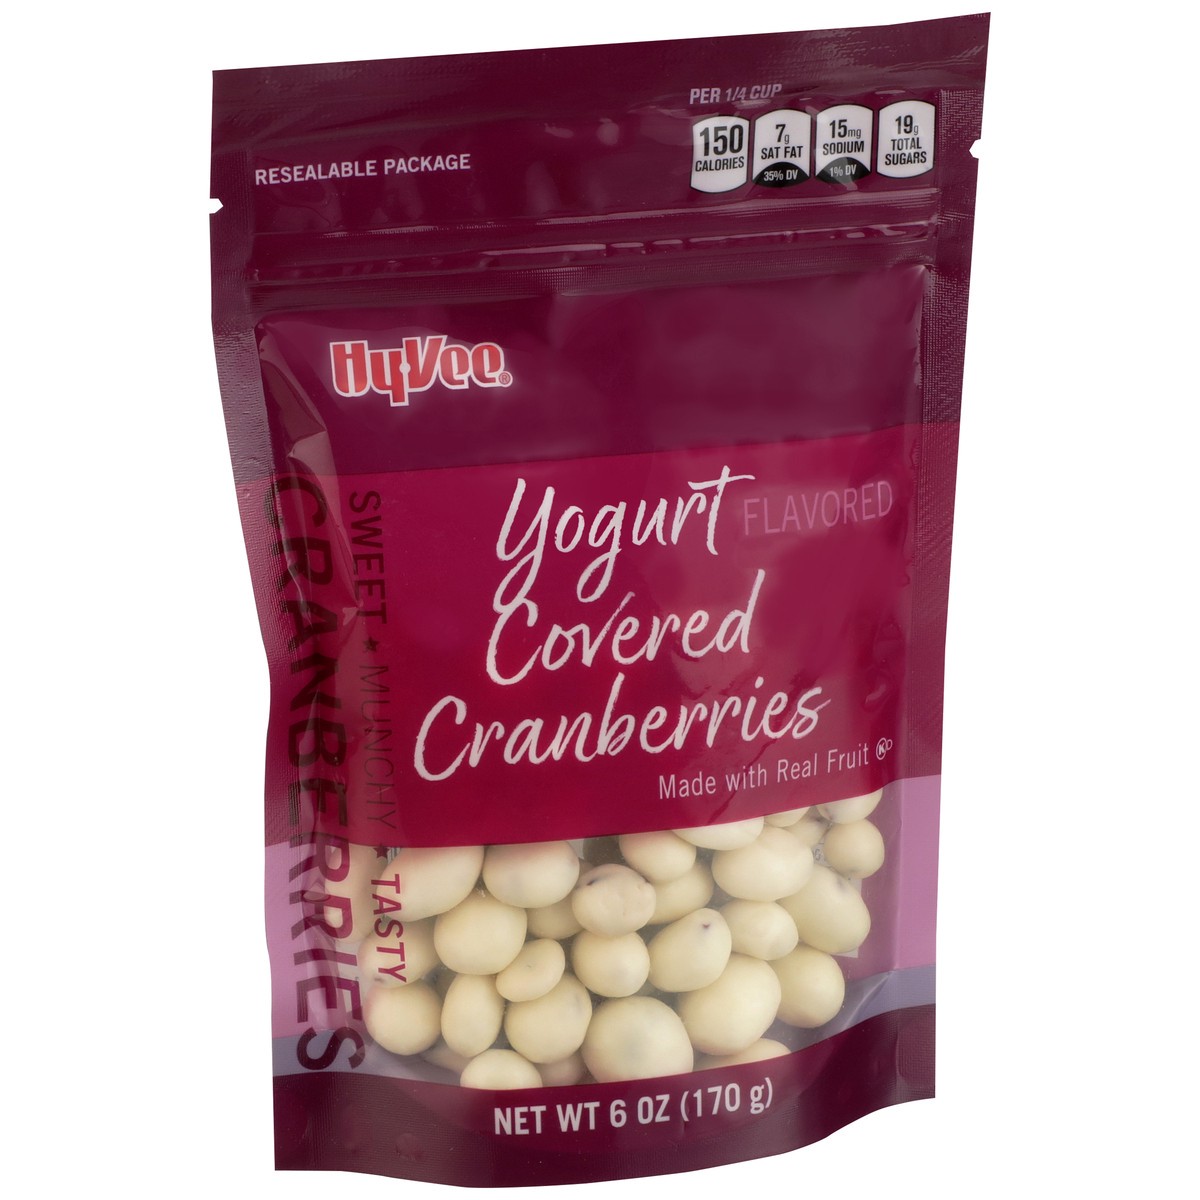 slide 2 of 8, Hy-vee Yogurt Flavored Covered Cranberries, 6 oz